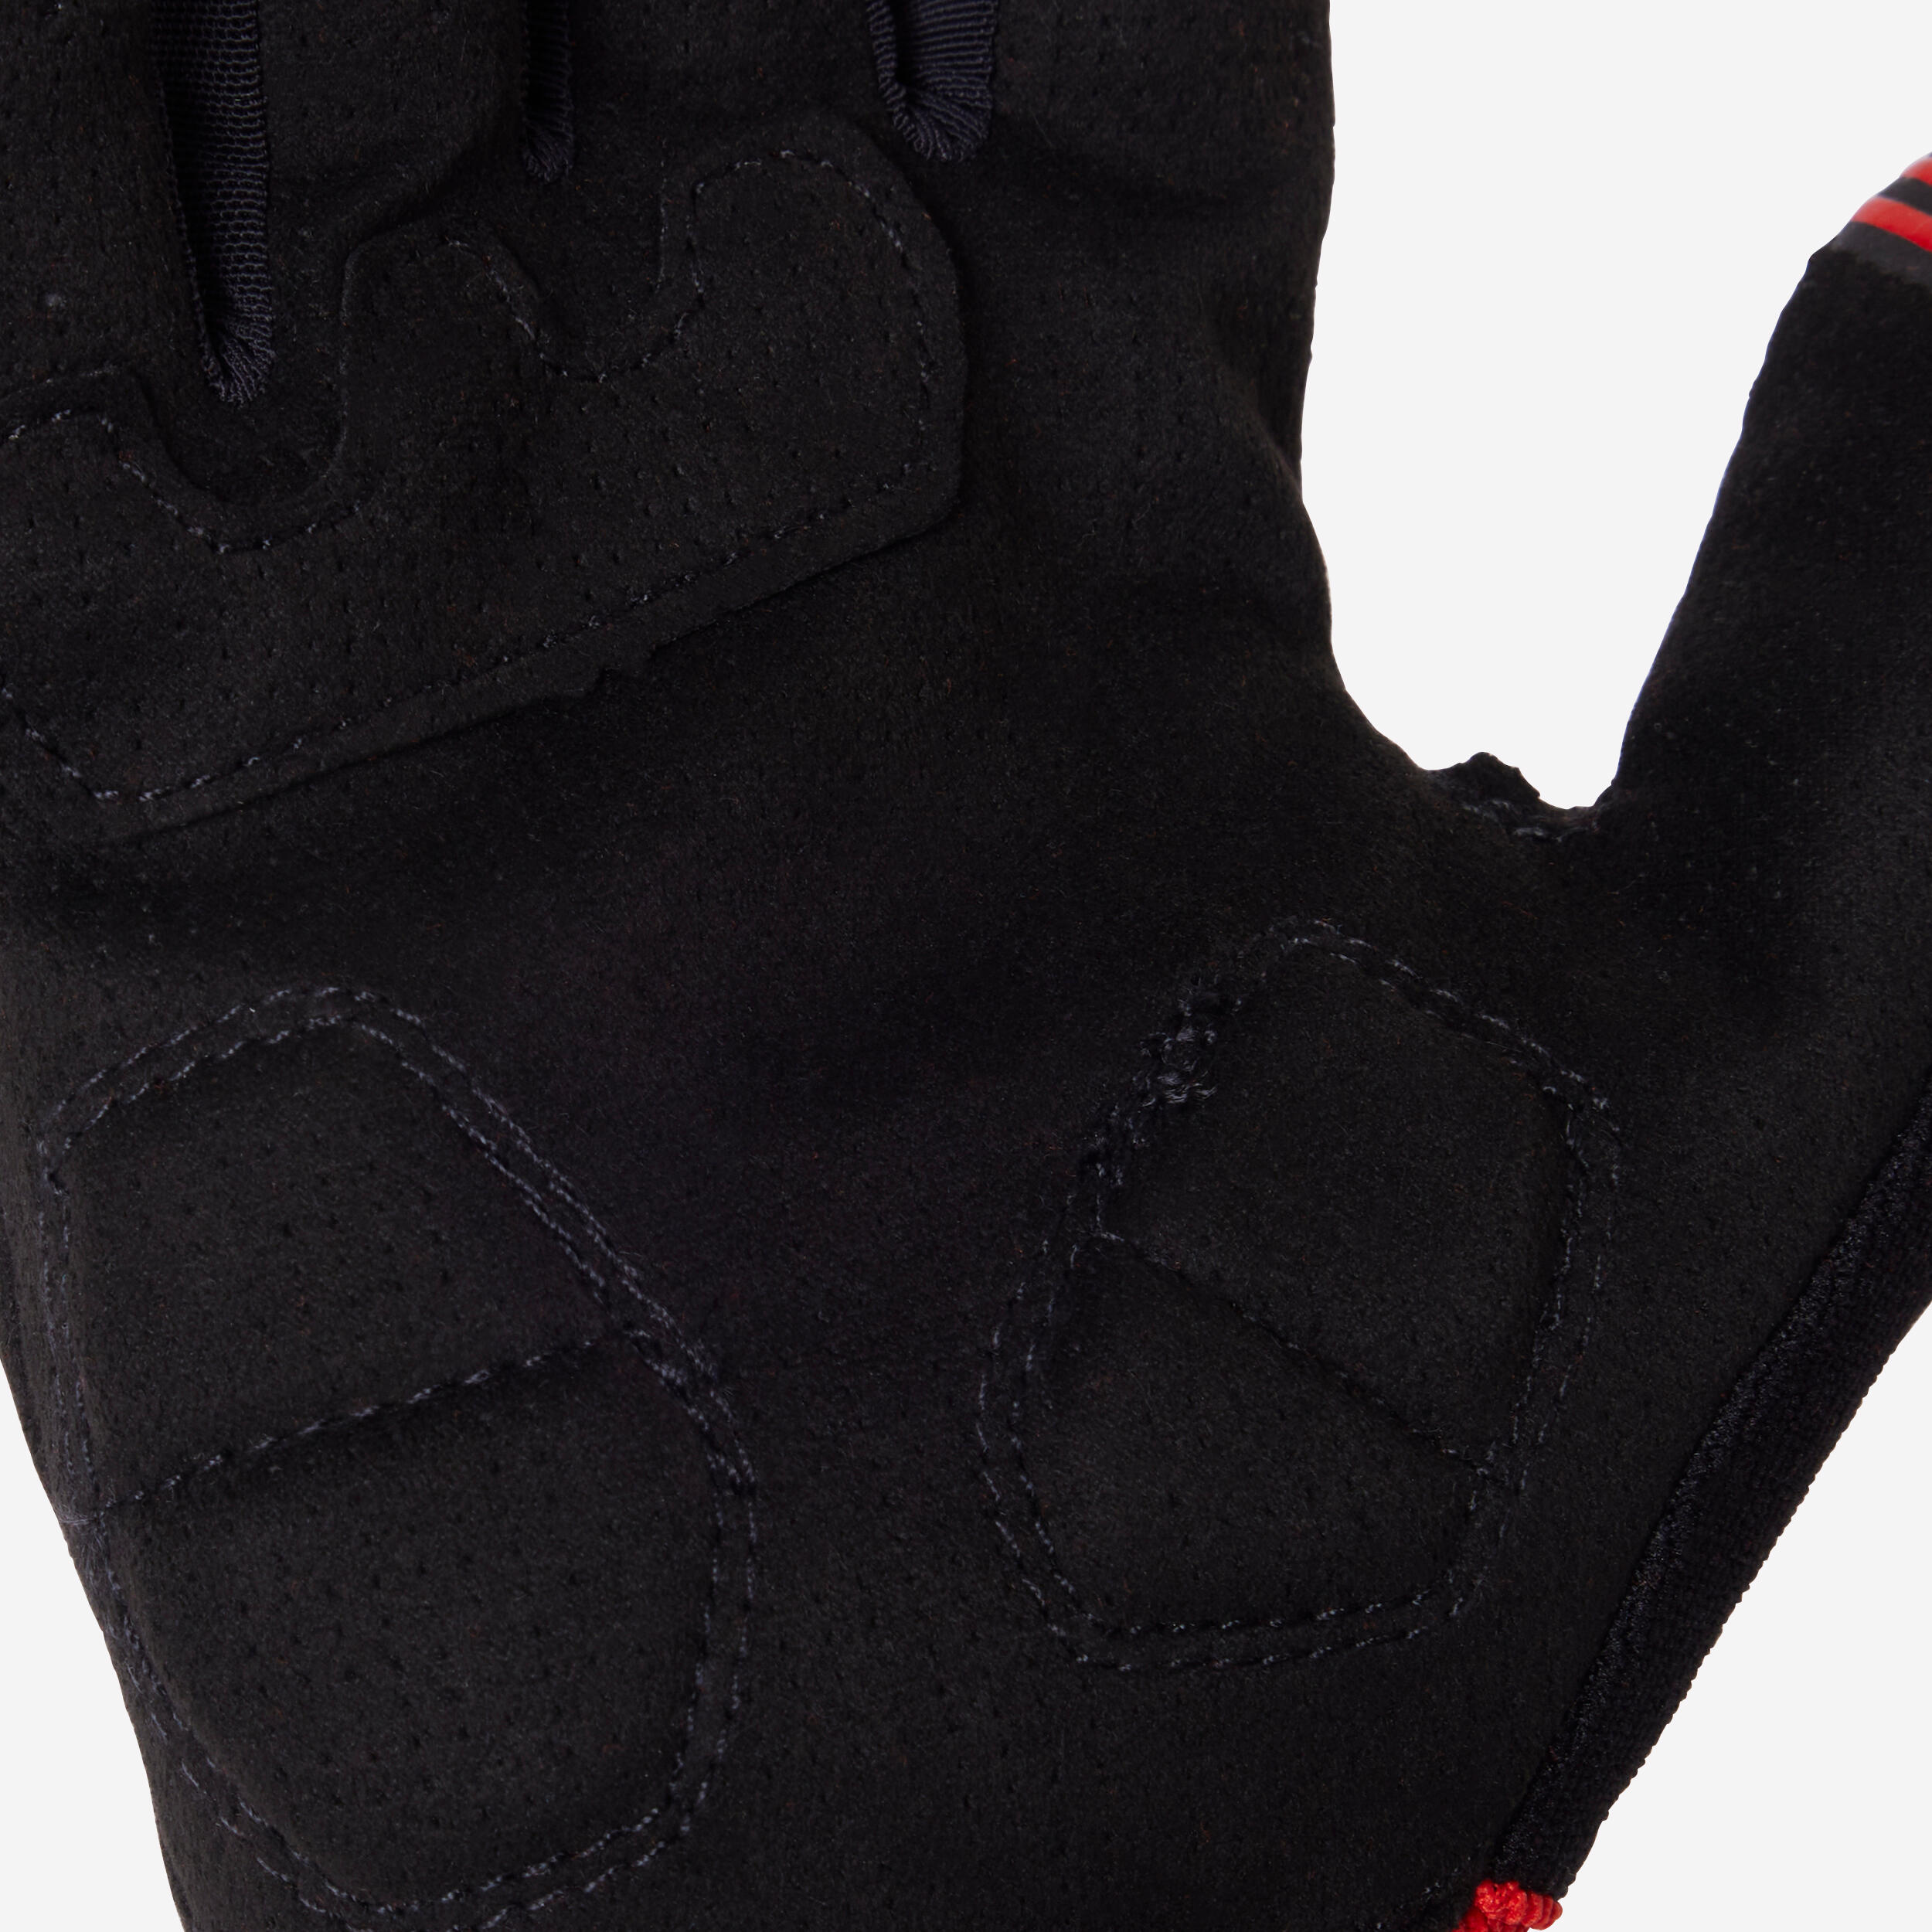 Mountain Biking Gloves ST 500 - Red 8/10